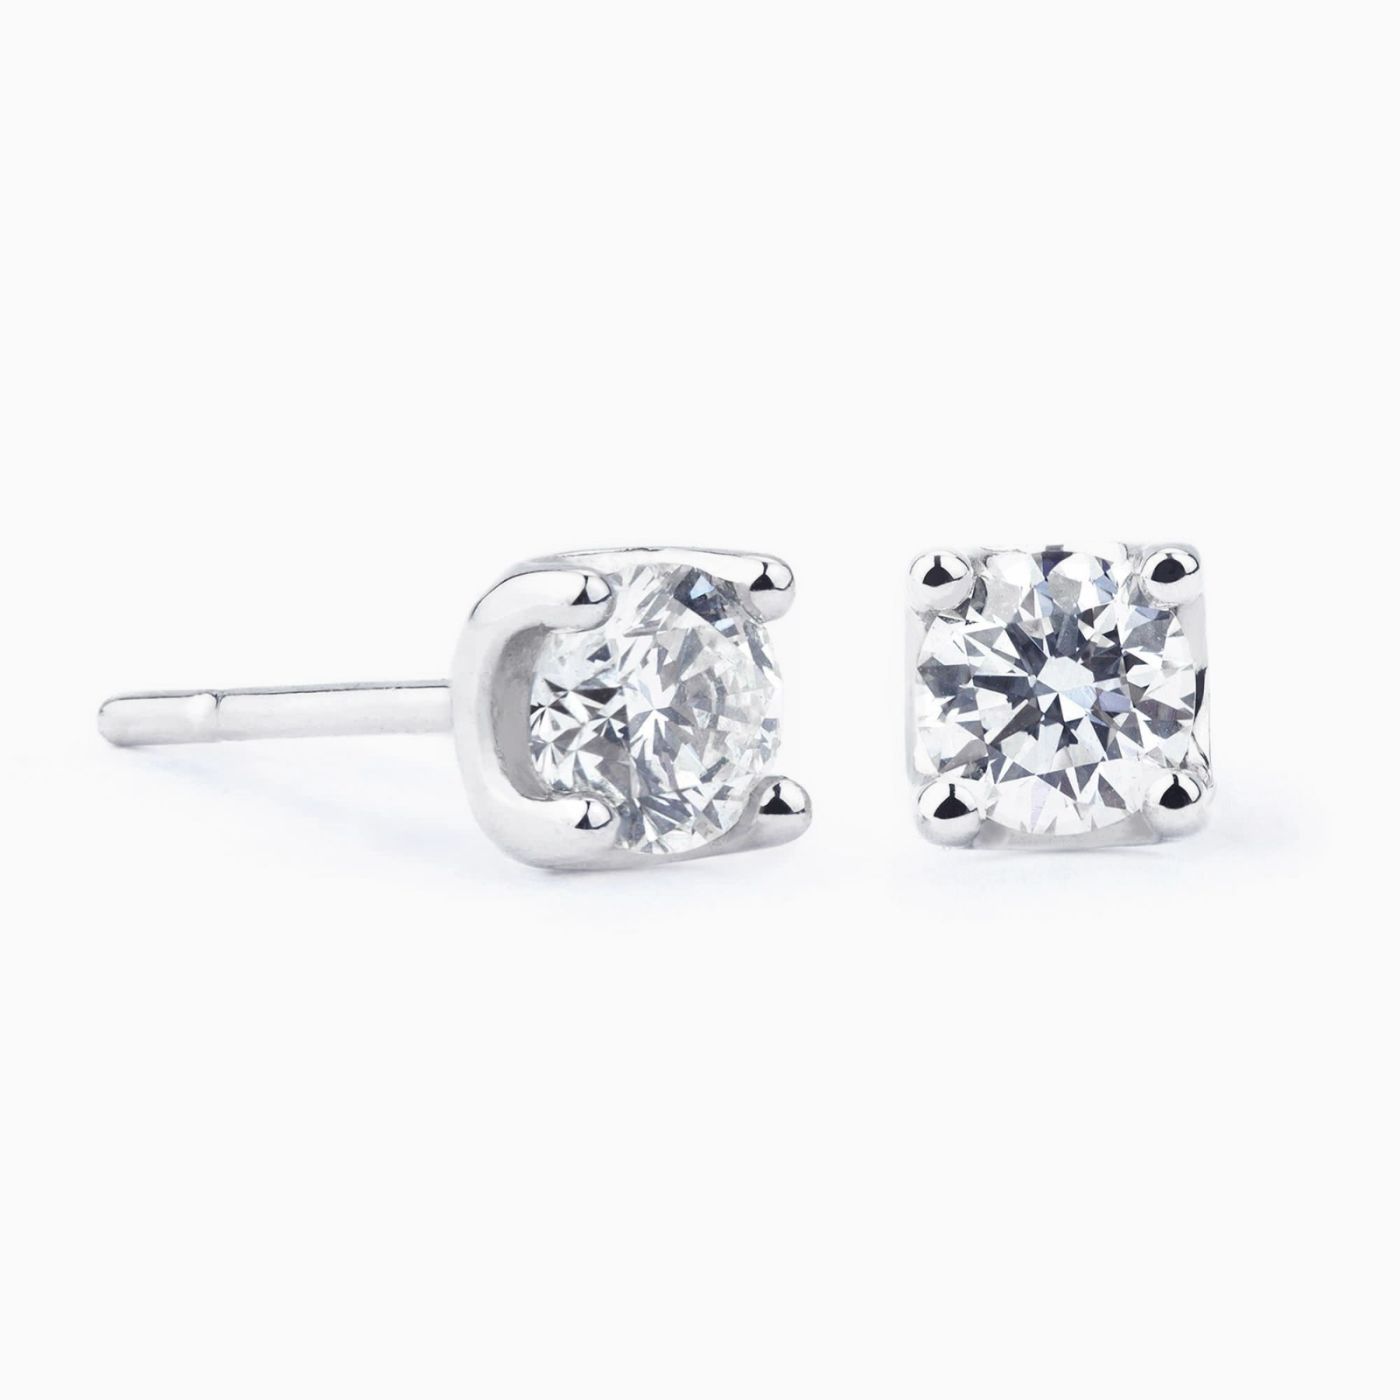 Diamond earrings 